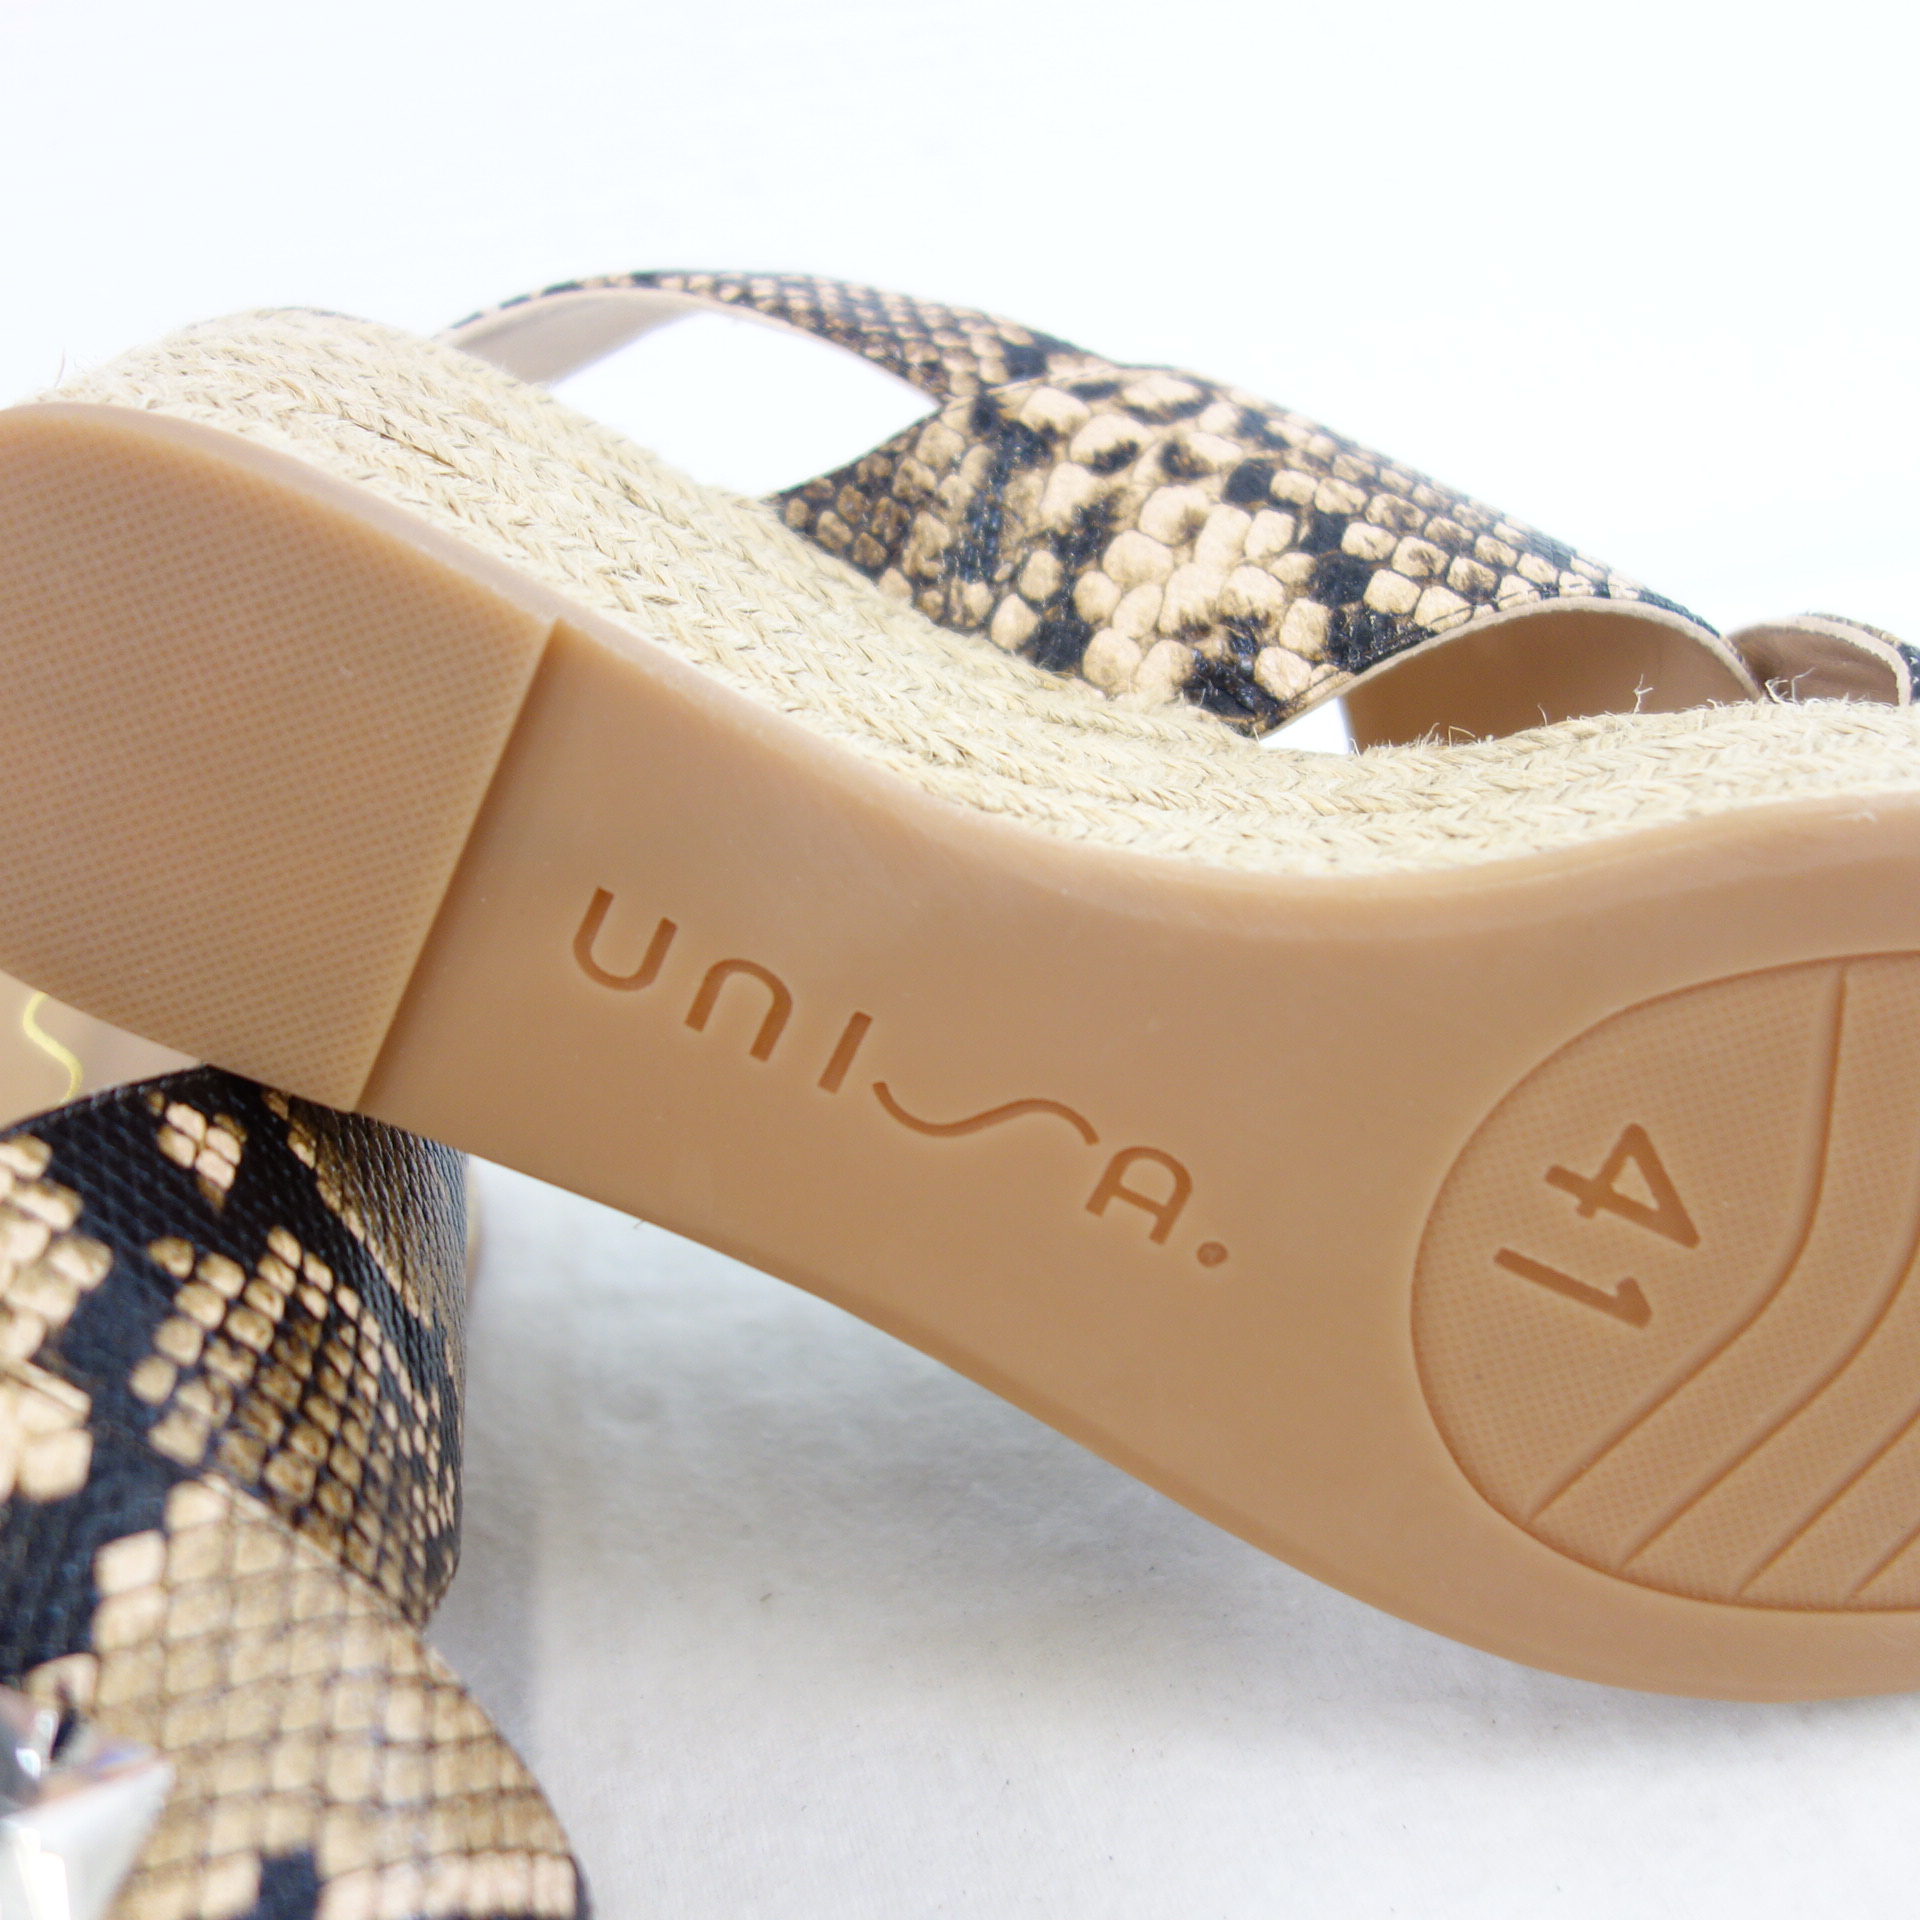 UNISA Damen Schuhe Sandalen Wedges Sandaletten Pump Leder Gr 41 Reptilprägung